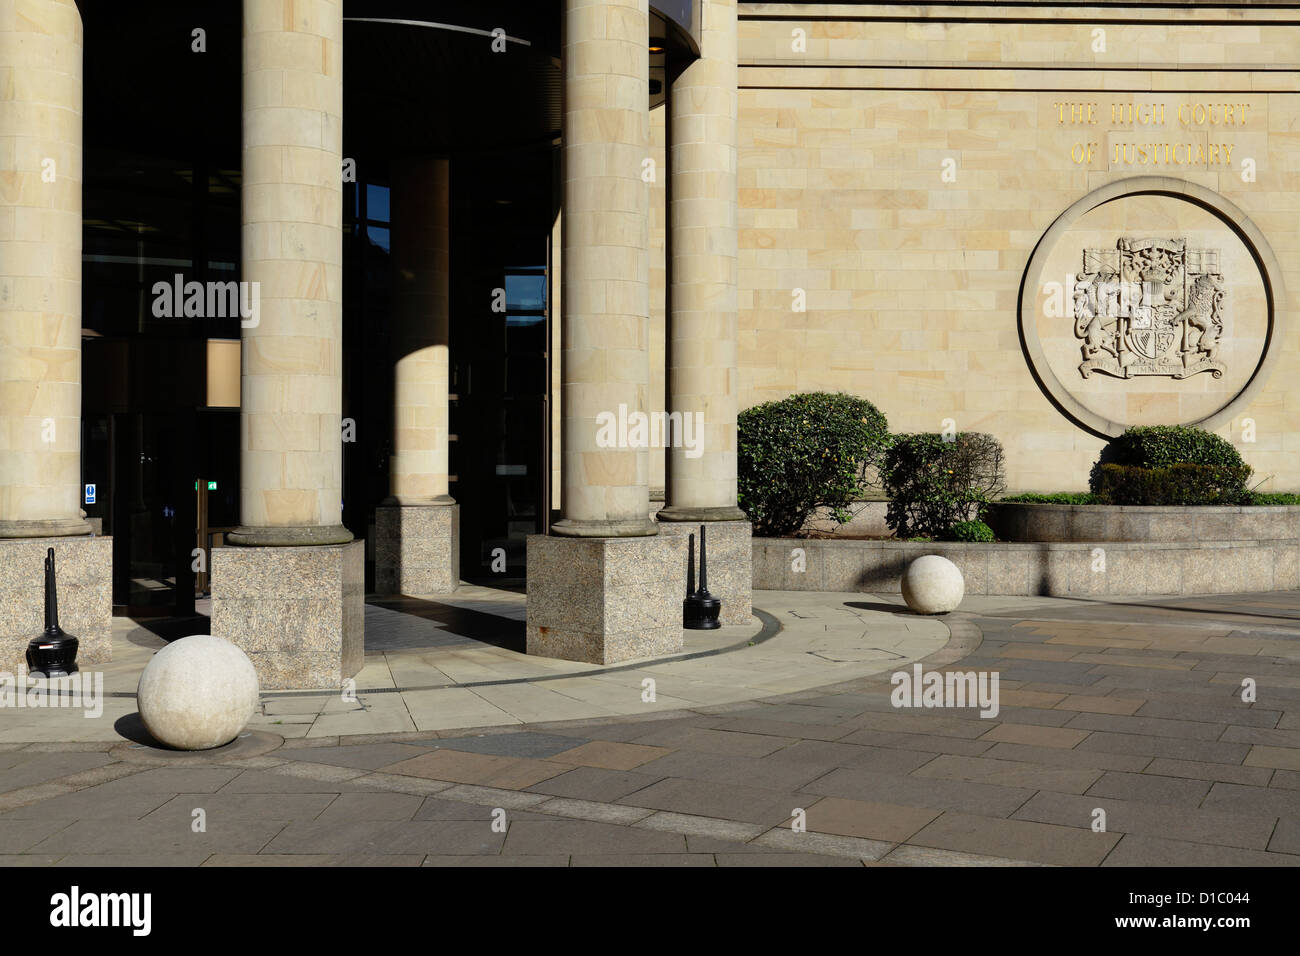 Entrée publique du High court of Justiciary de Glasgow sur Mart Street à Glasgow, vue de Jocelyn Square, Écosse, Royaume-Uni Banque D'Images